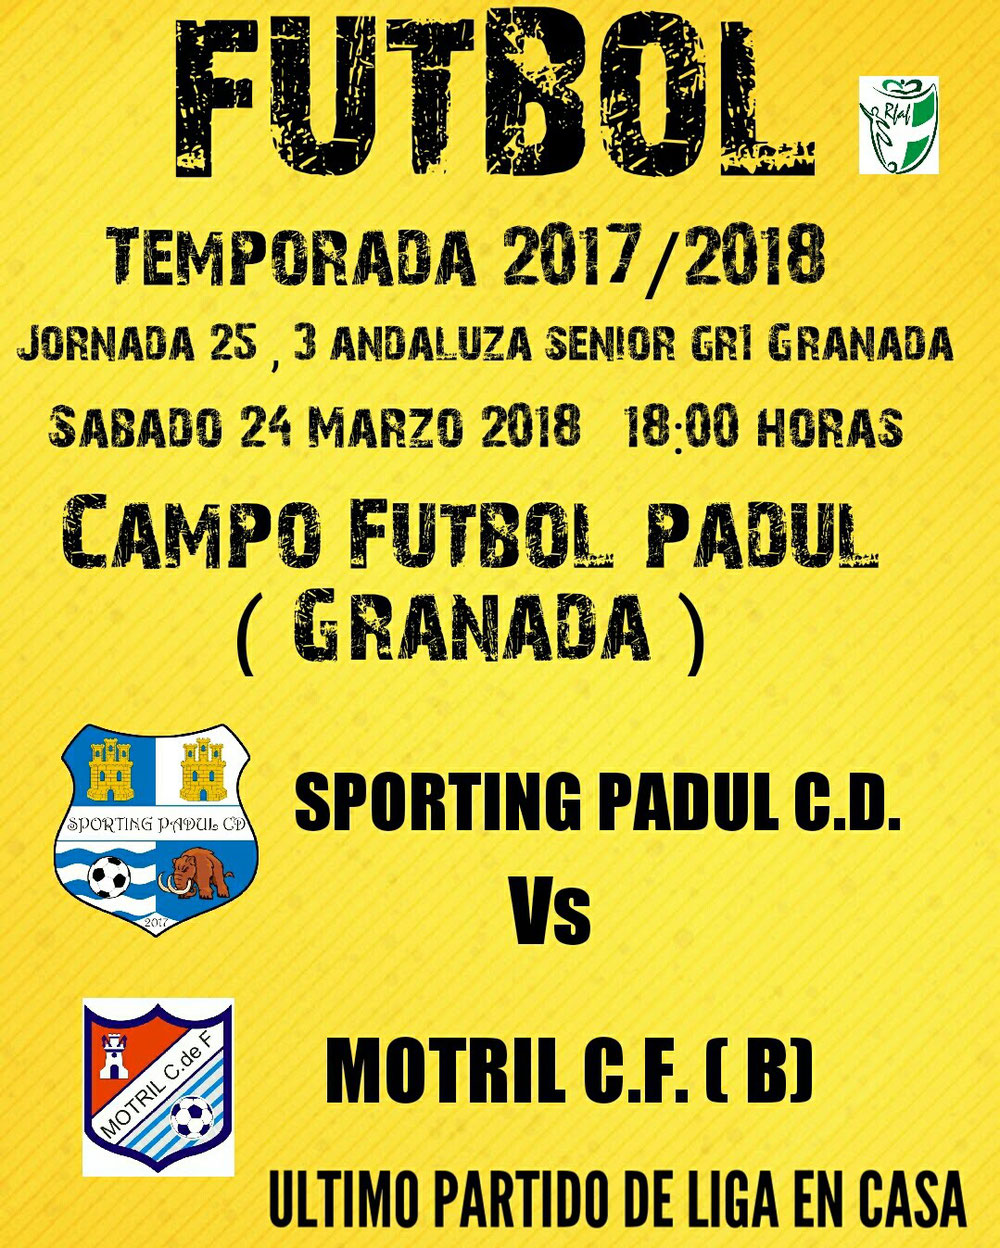 Sporting Padul CD vs Motril CF ( b ) 